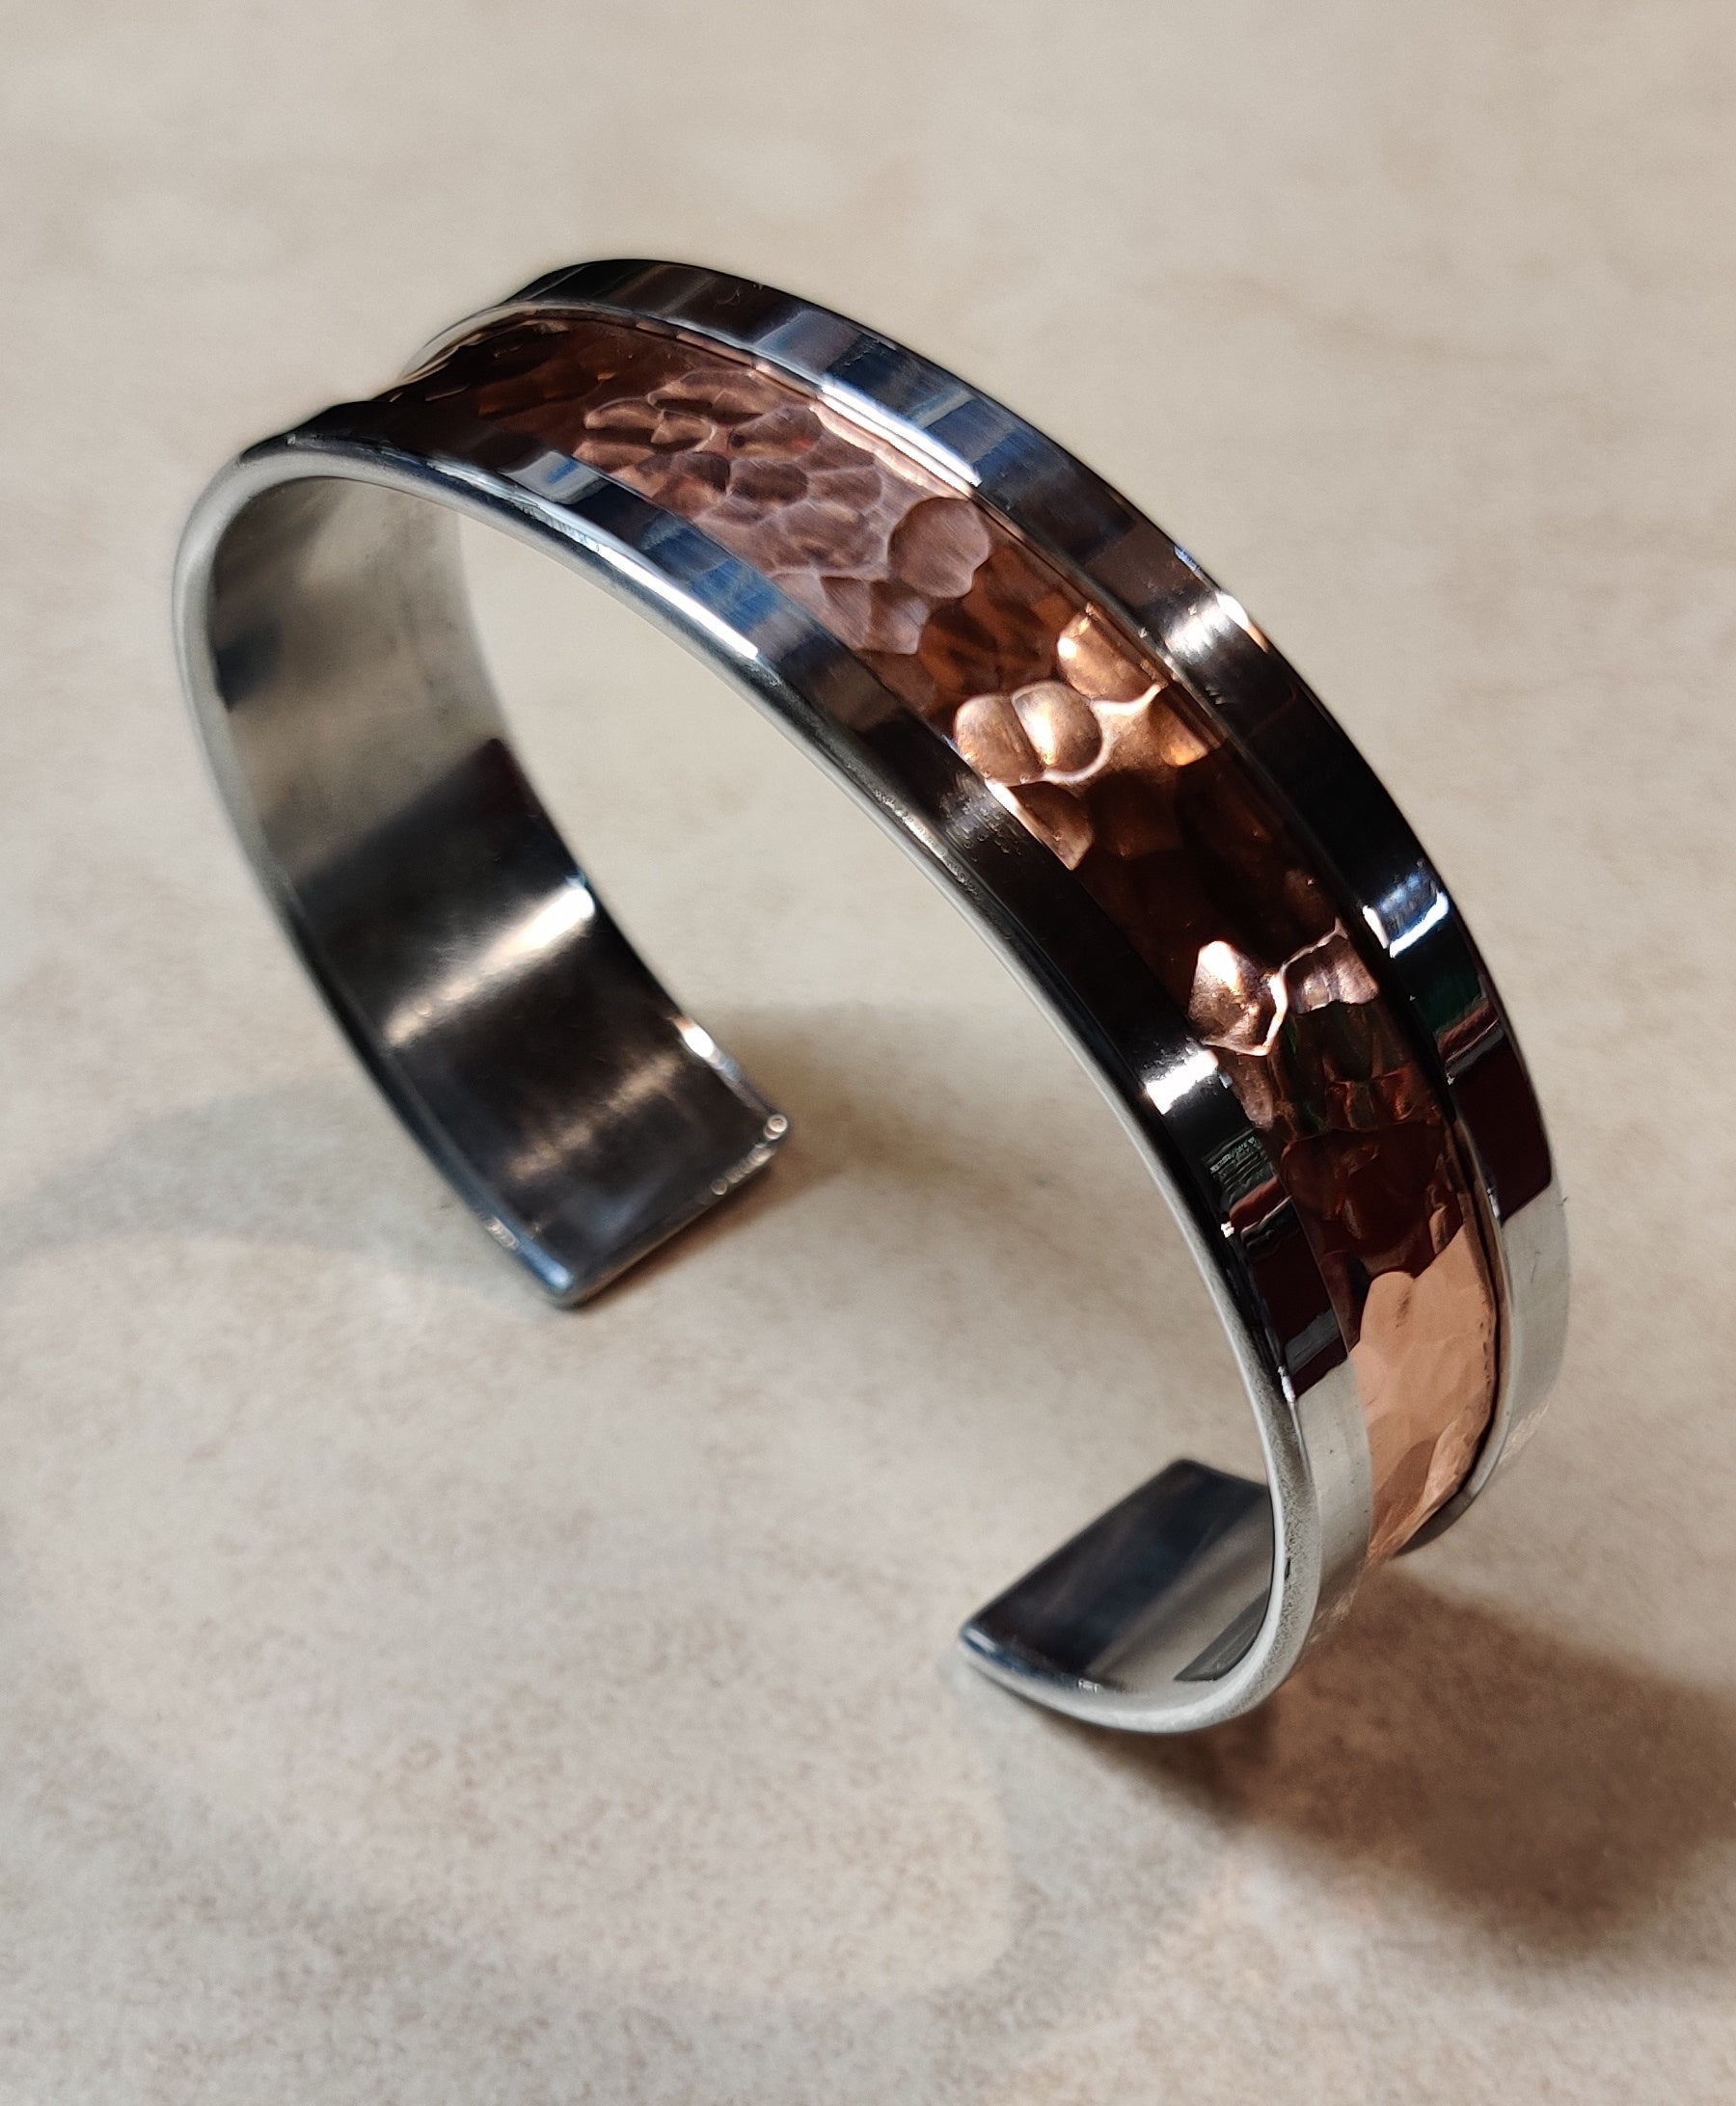 100% Copper Bracelet Kada Healing Magnet Bracelets For Arthritis Pain Men  Women | eBay